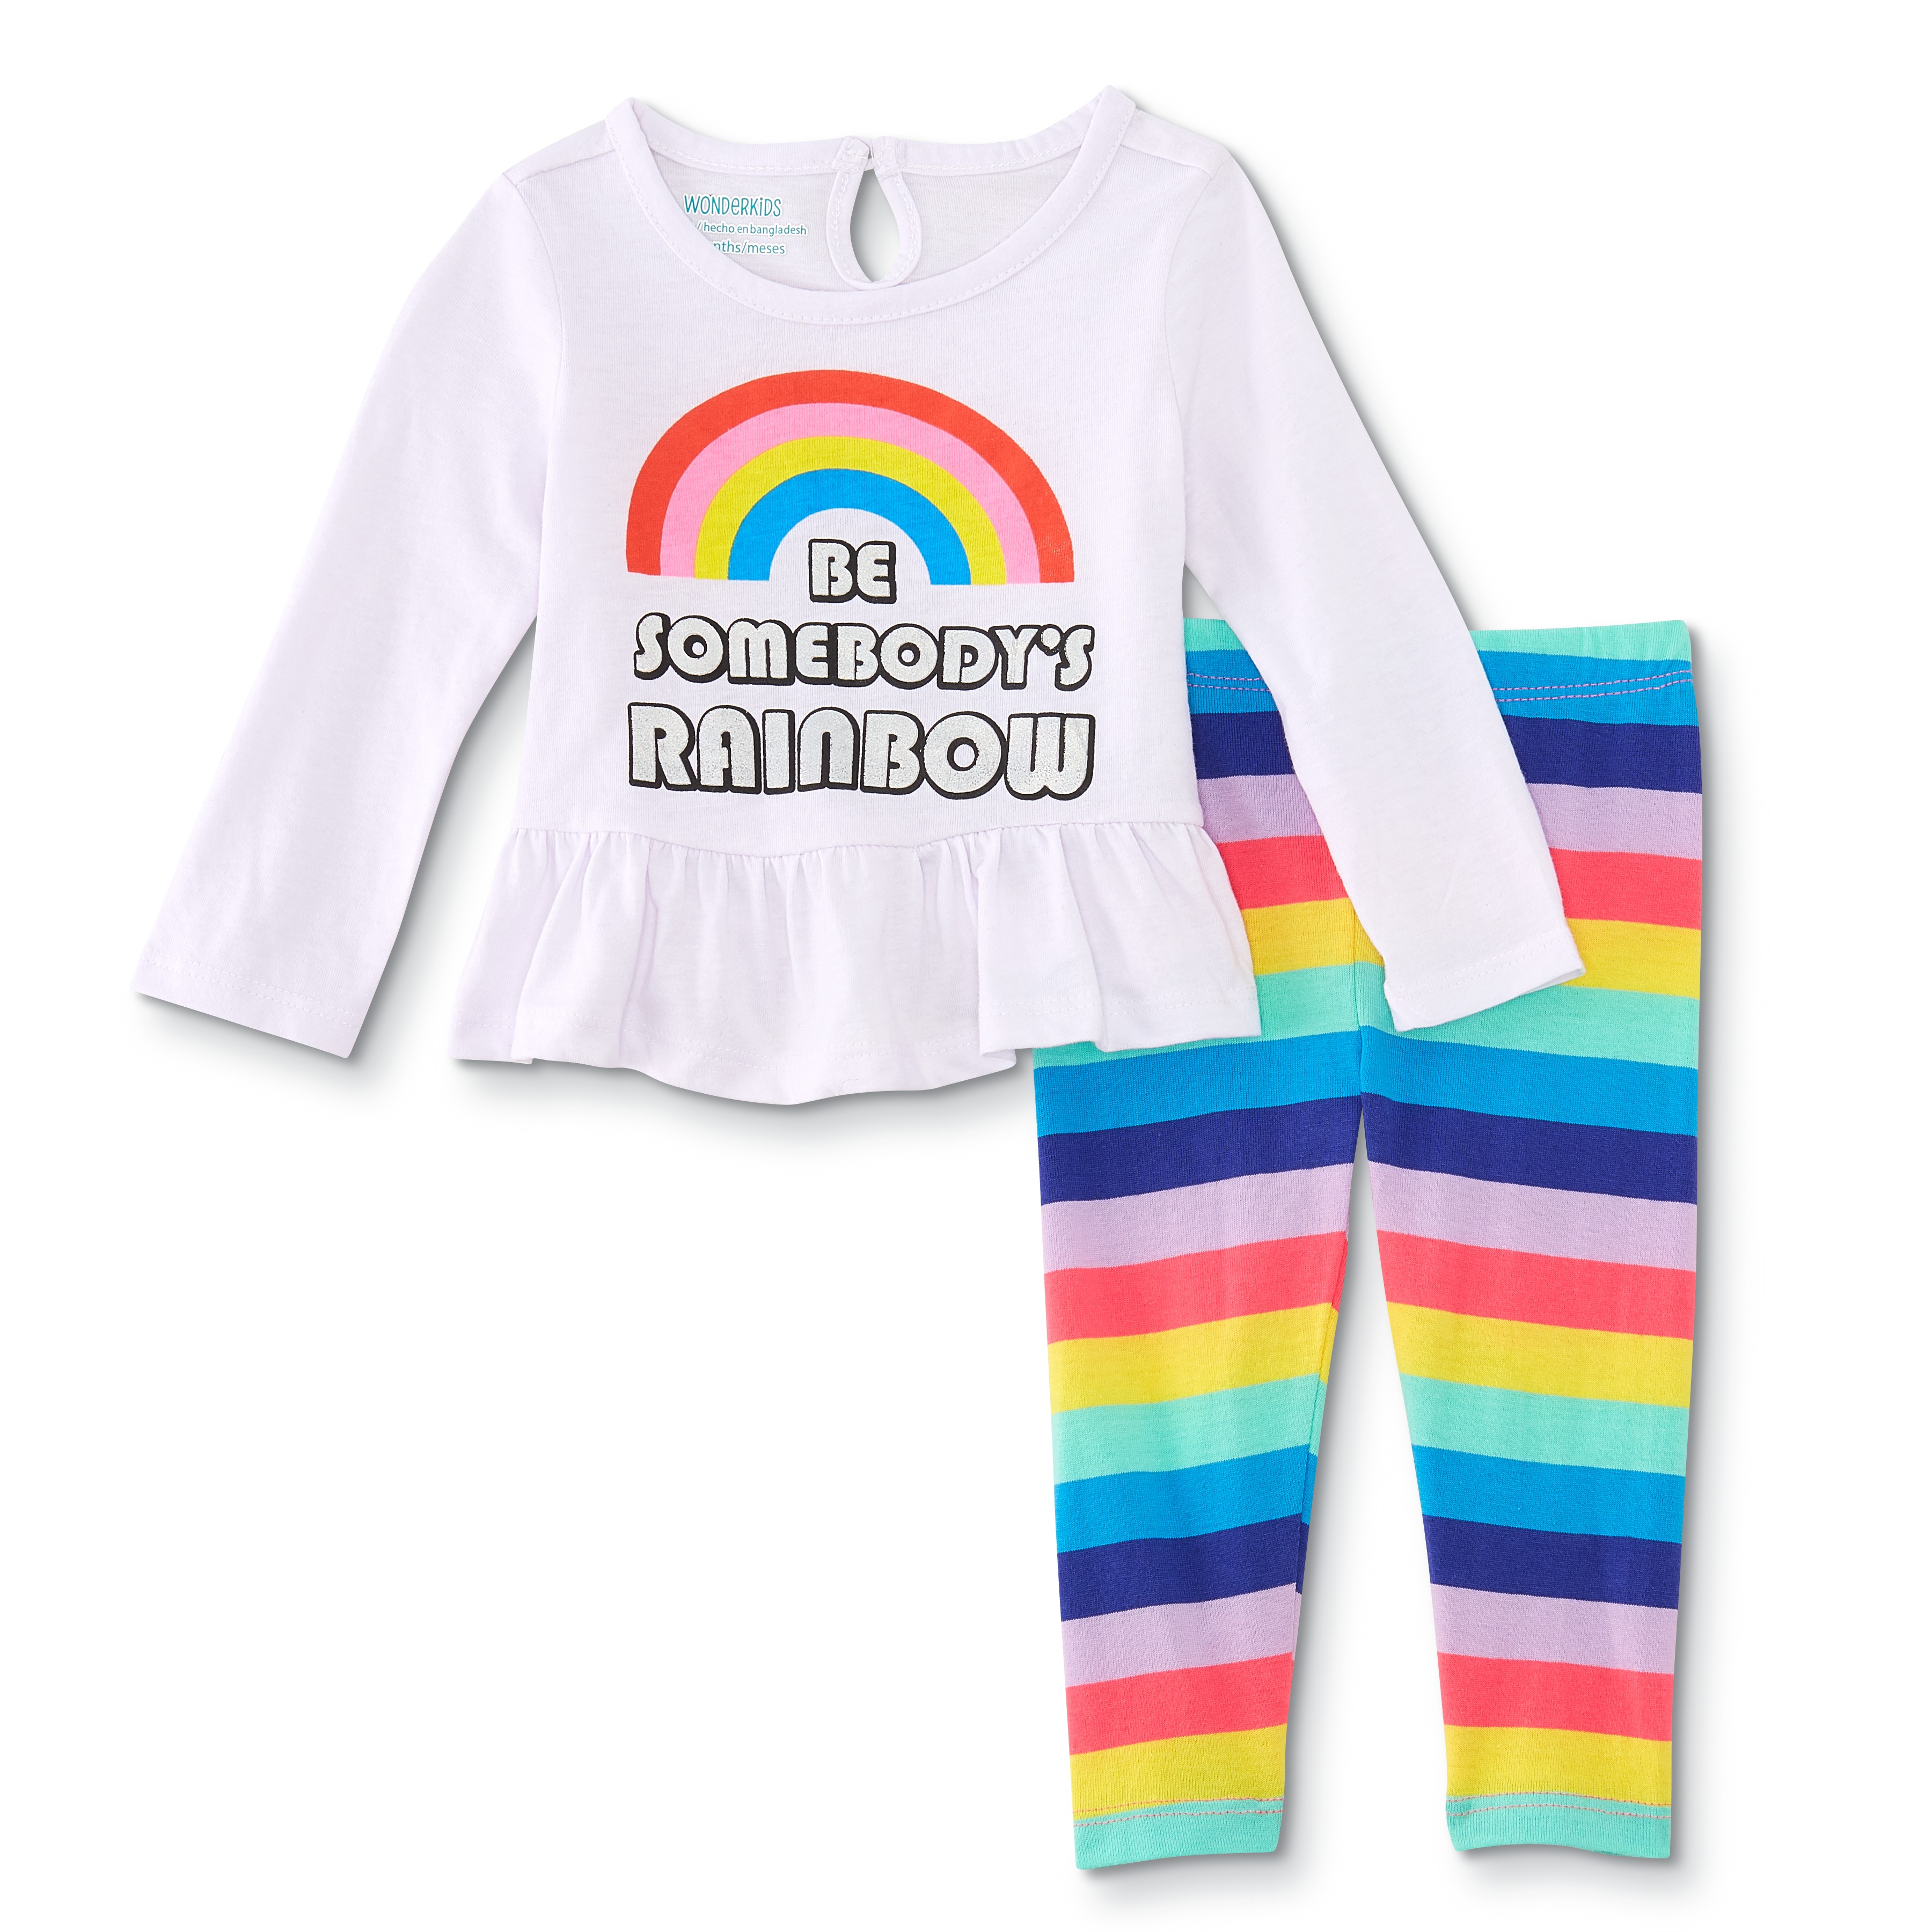 WonderKids Infant & Toddler Girls' Long-Sleeve Top & Leggings - Be Somebody's Rainbow